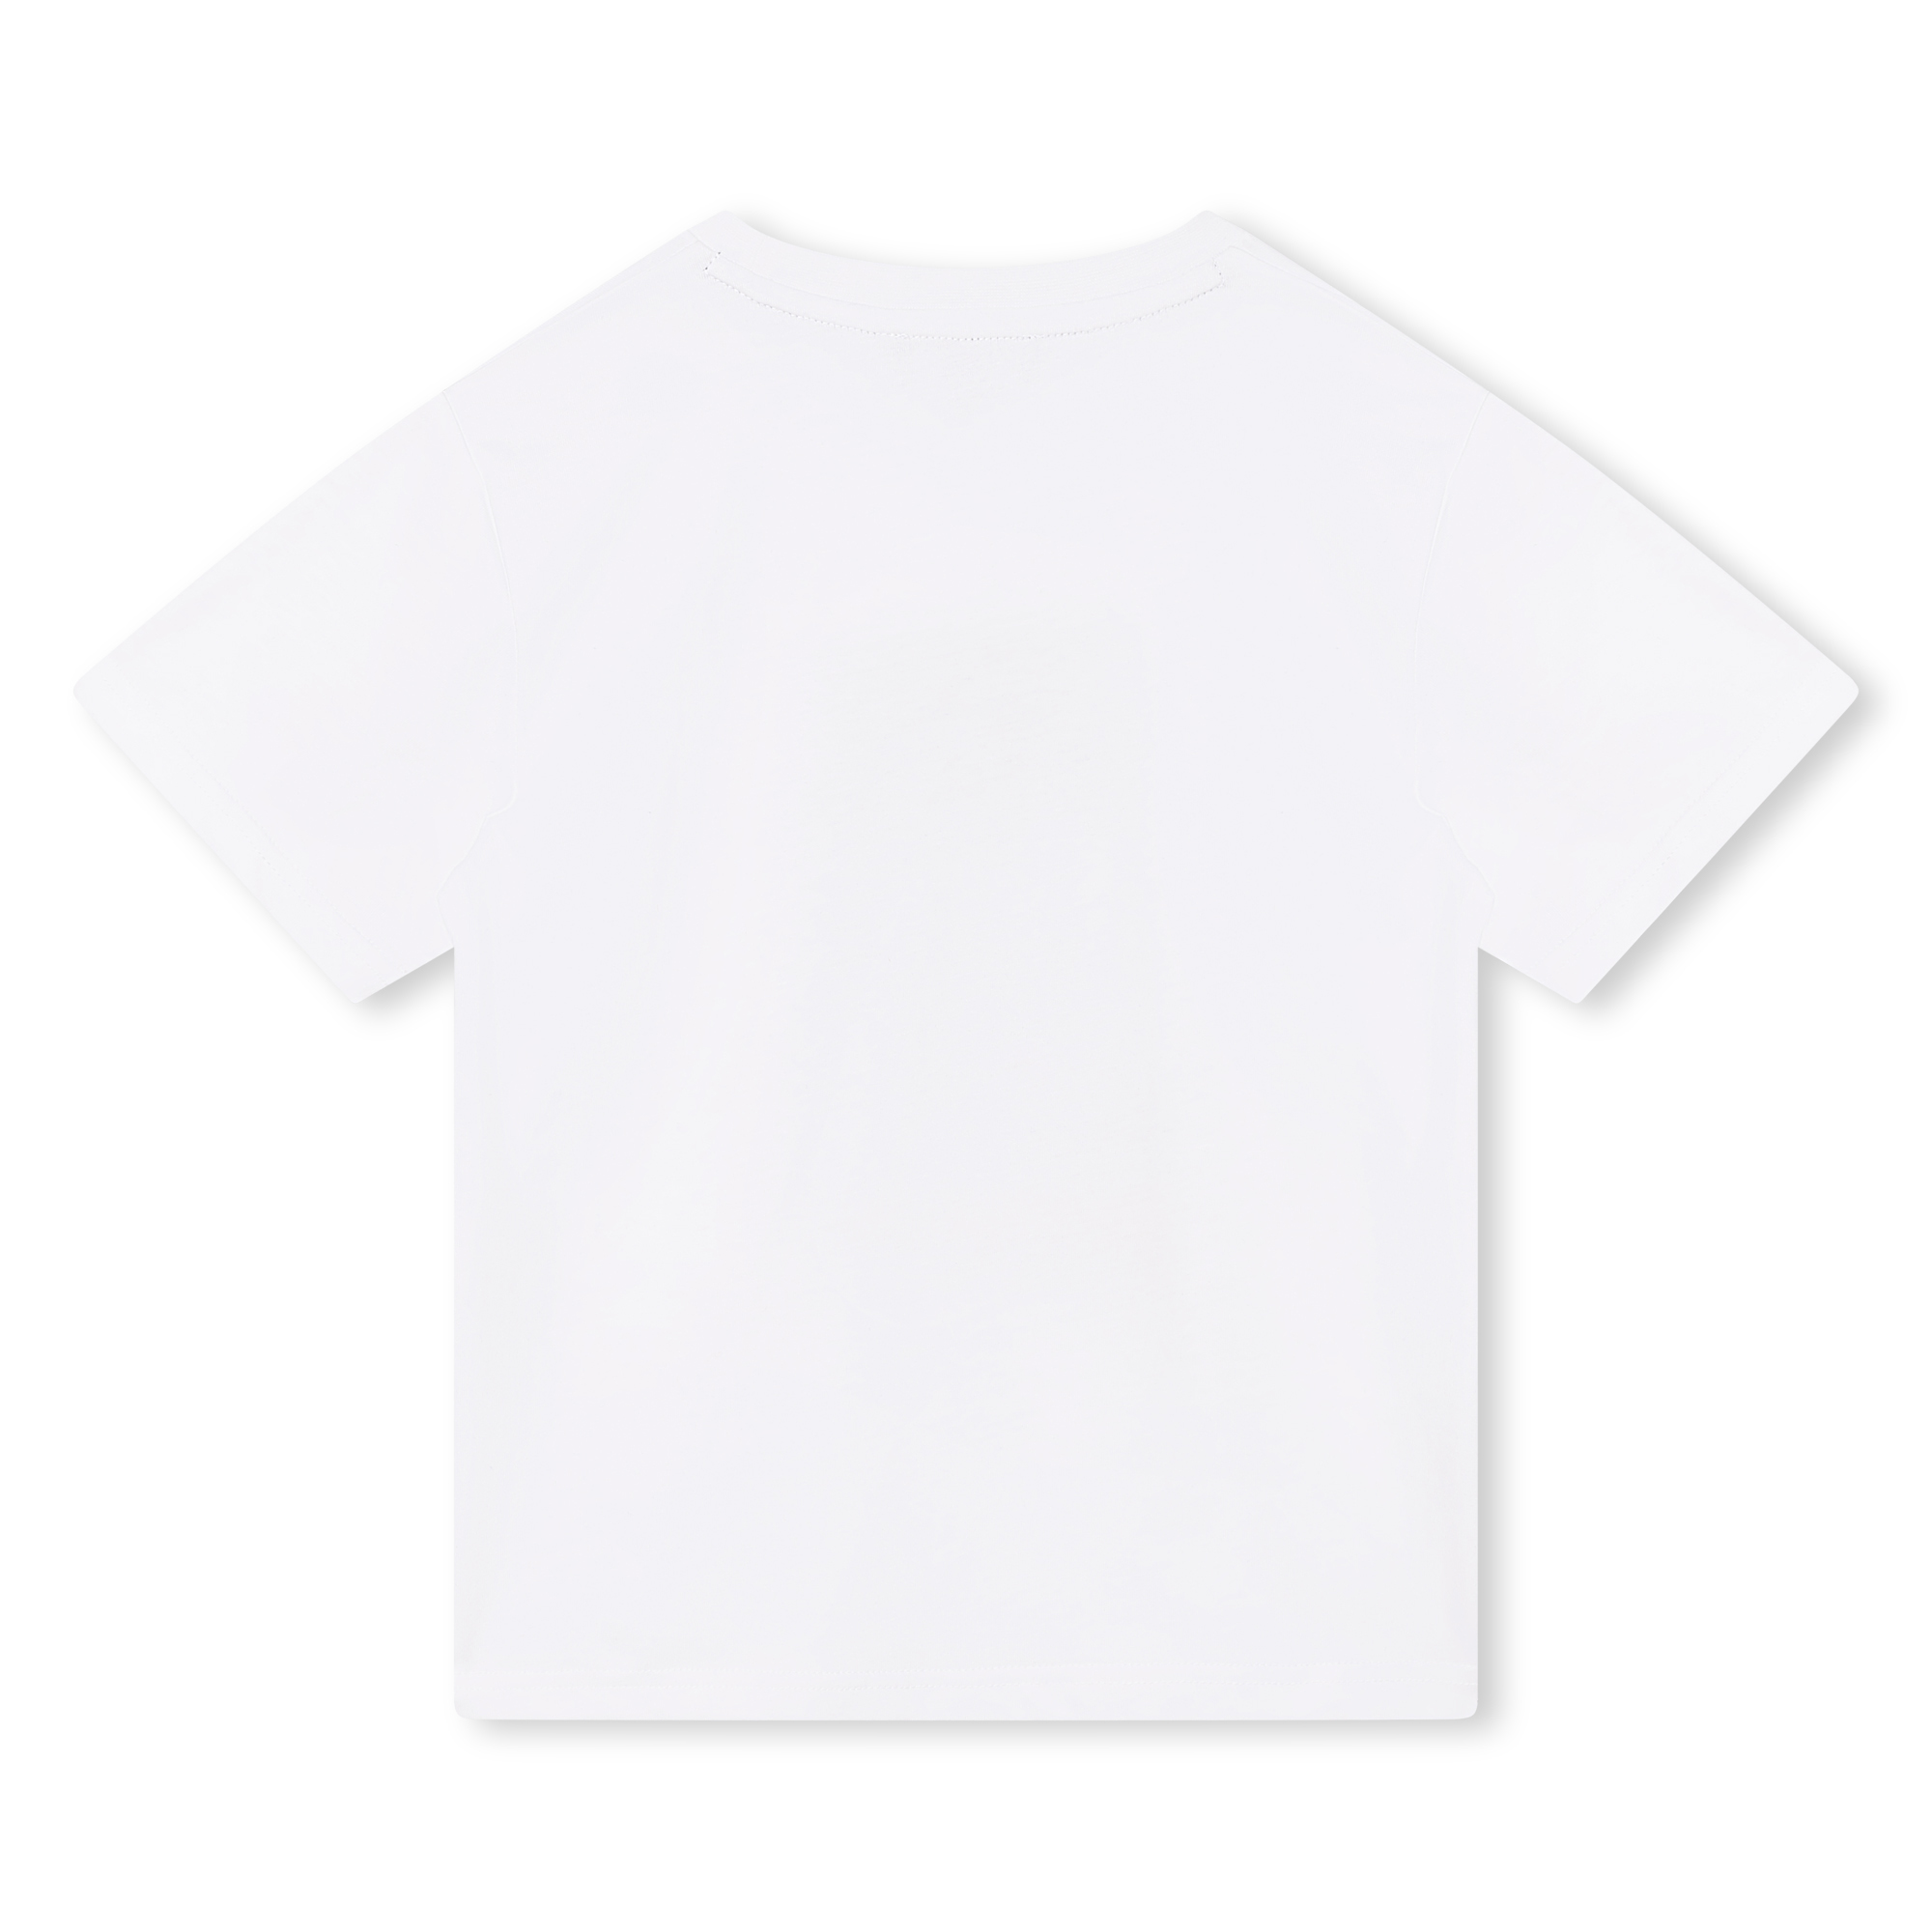 Wijd T-shirt met print DKNY Voor